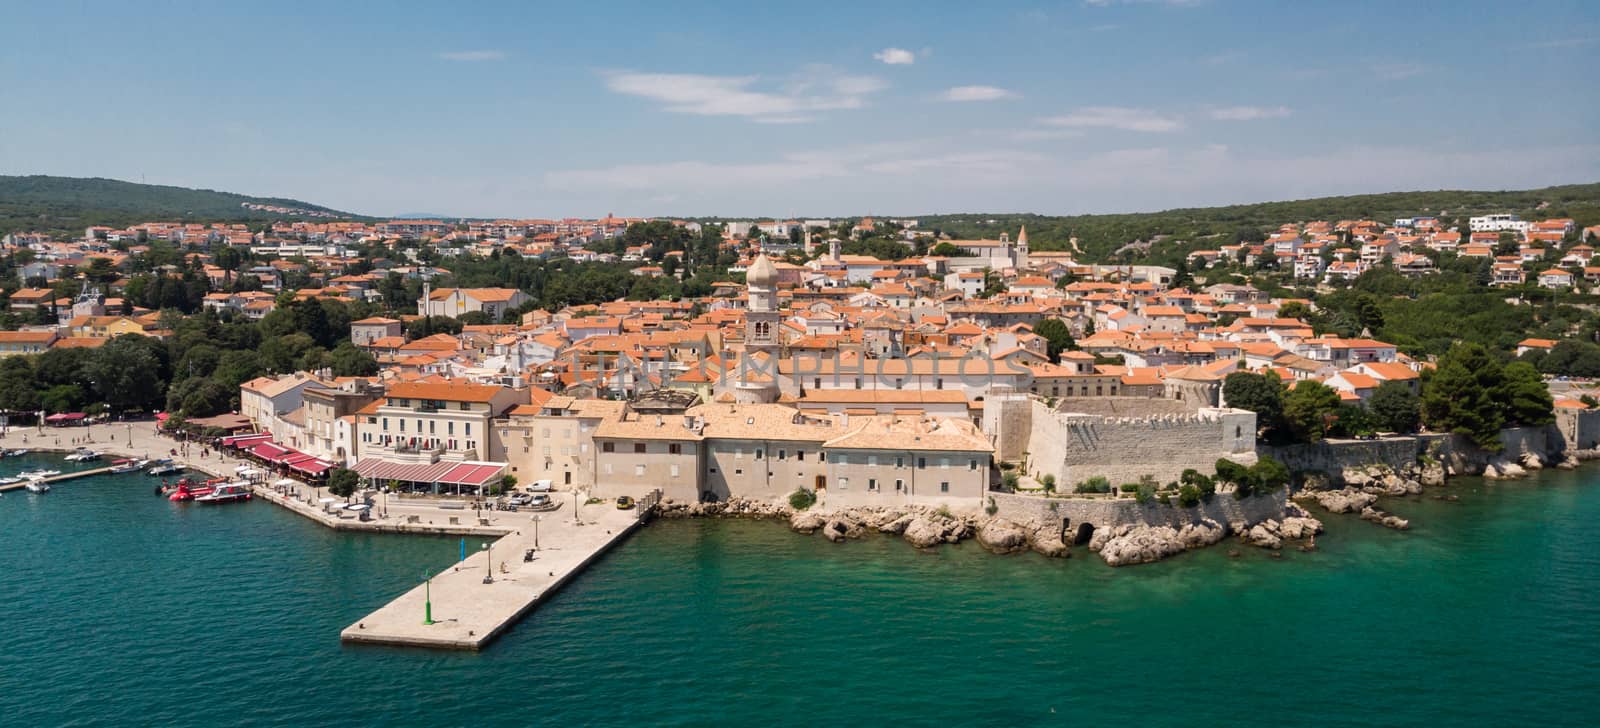 Aerial view of mediterranean coastal old town Krk, Island Krk, Croatia, EU by kasto